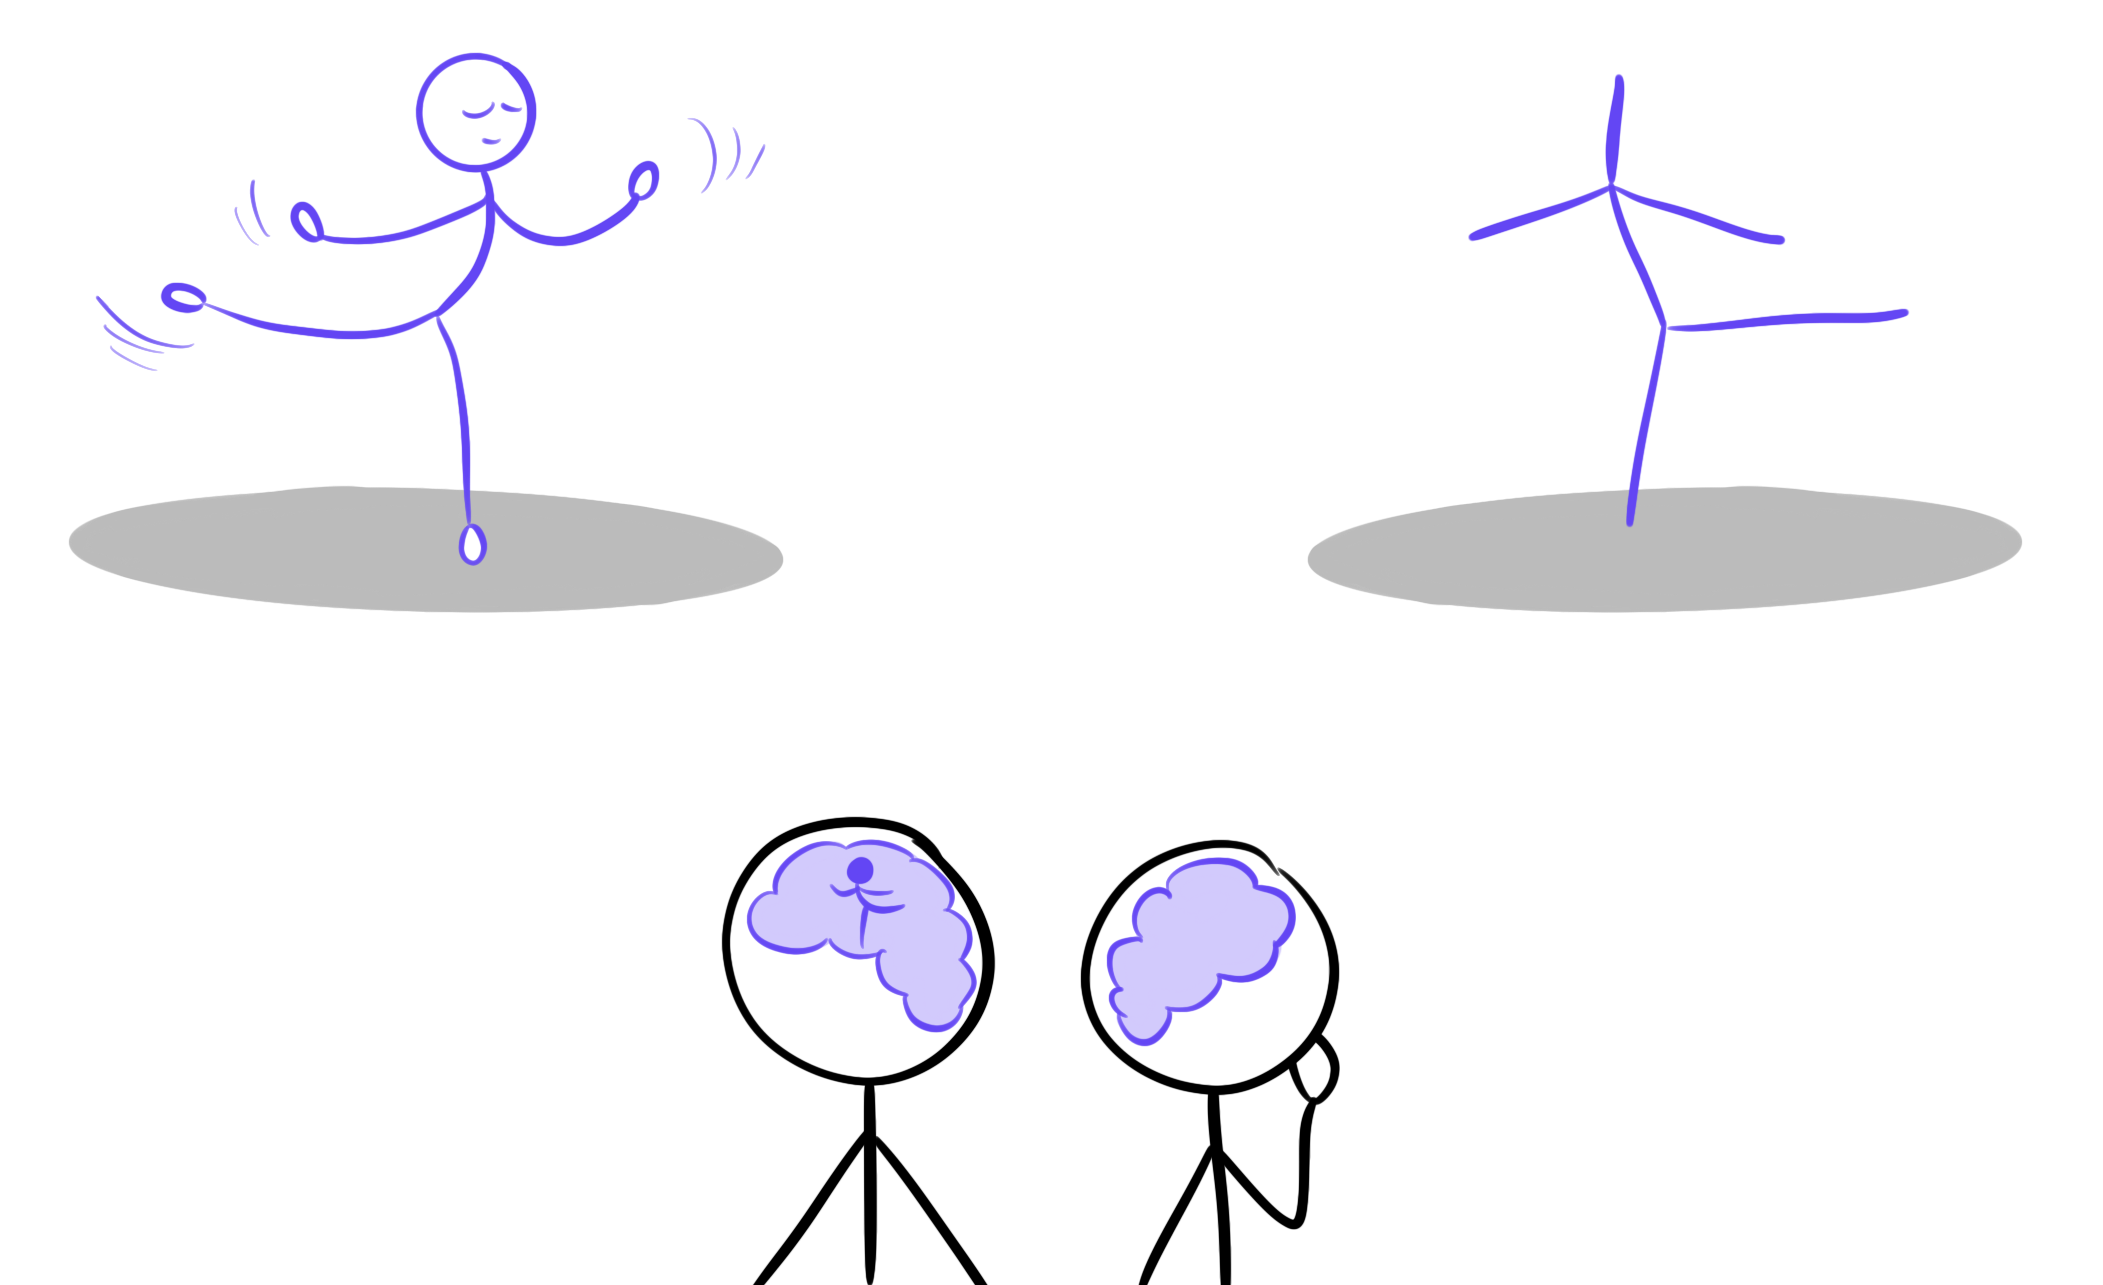 À gauche, un danseur regarde un corps humain qui danse et une réflexion de cette danse s'affiche dans le cerveau. À droite, le danseur regarde une silhouette de bâton qui danse, mais cette fois, il n'y a pas de réflexion dans le cerveau.